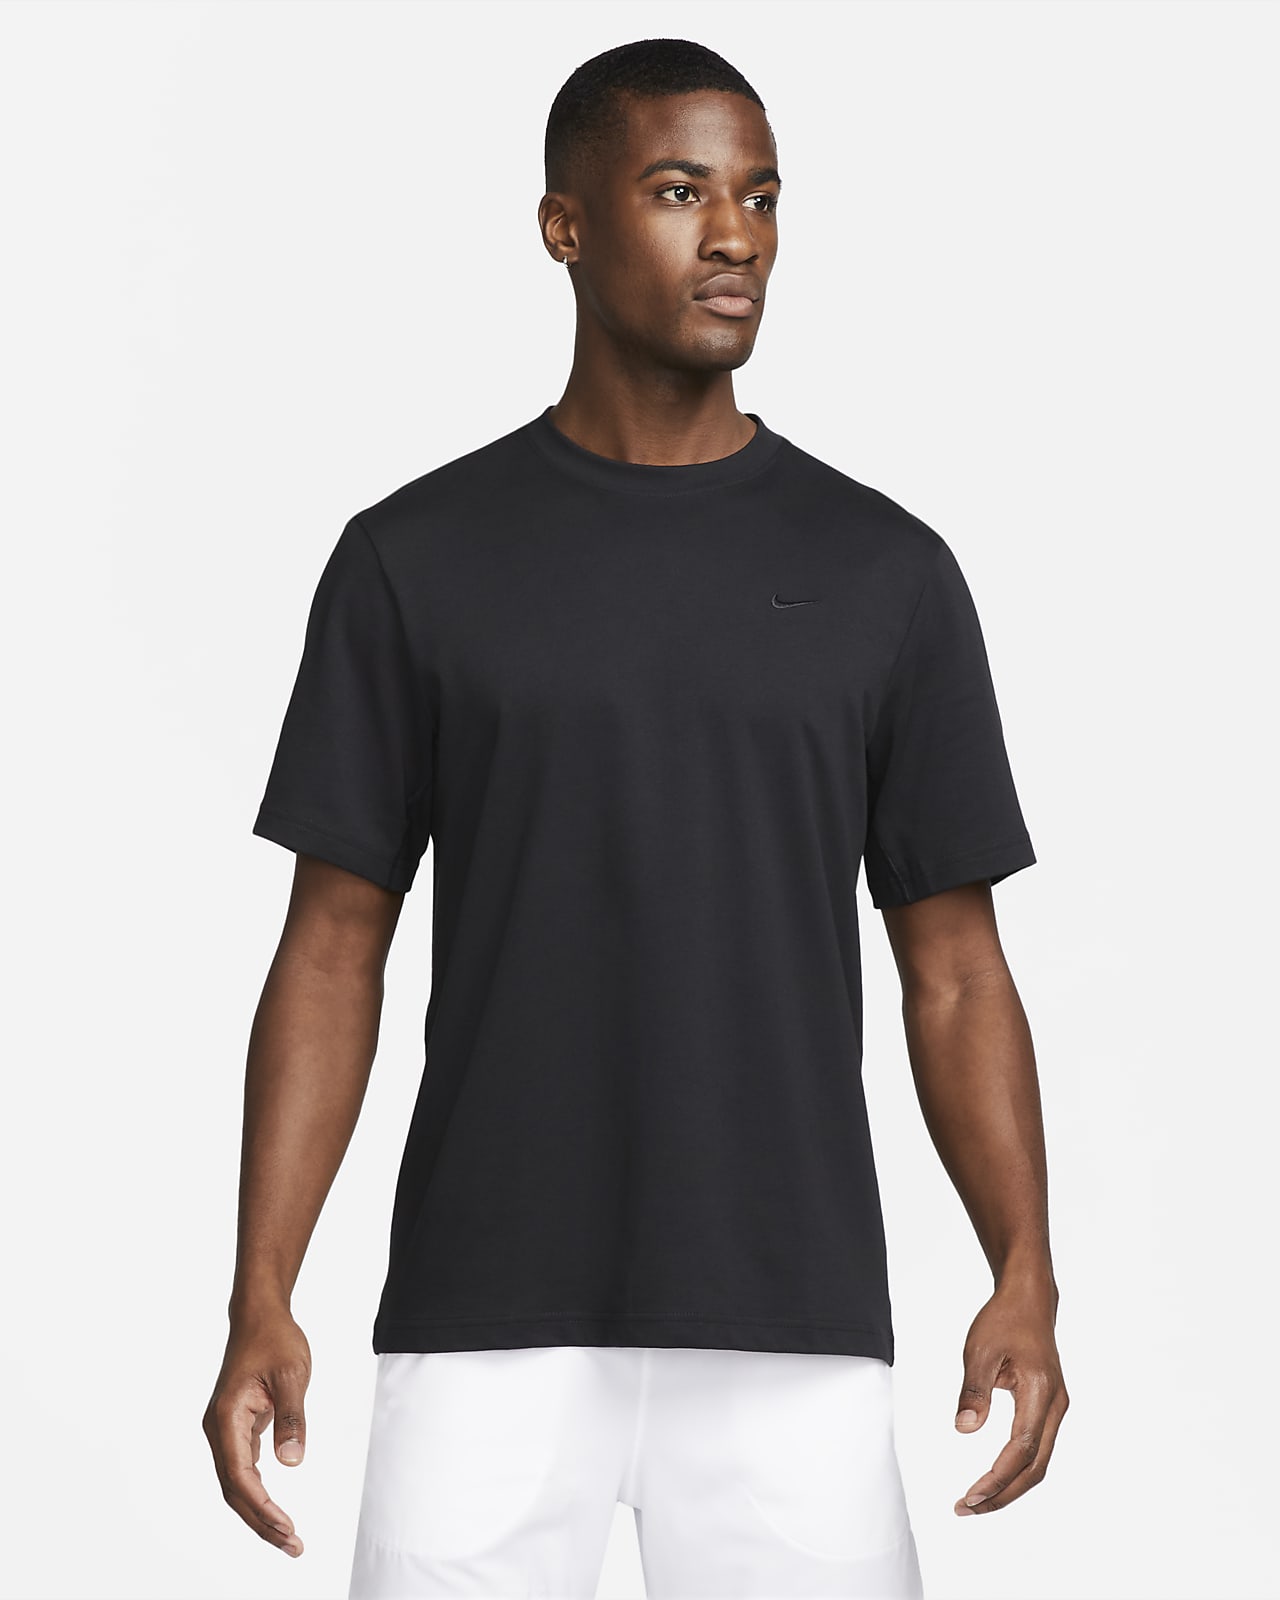 Ανδρική ευέλικτη κοντομάνικη μπλούζα Dri-FIT Nike Primary